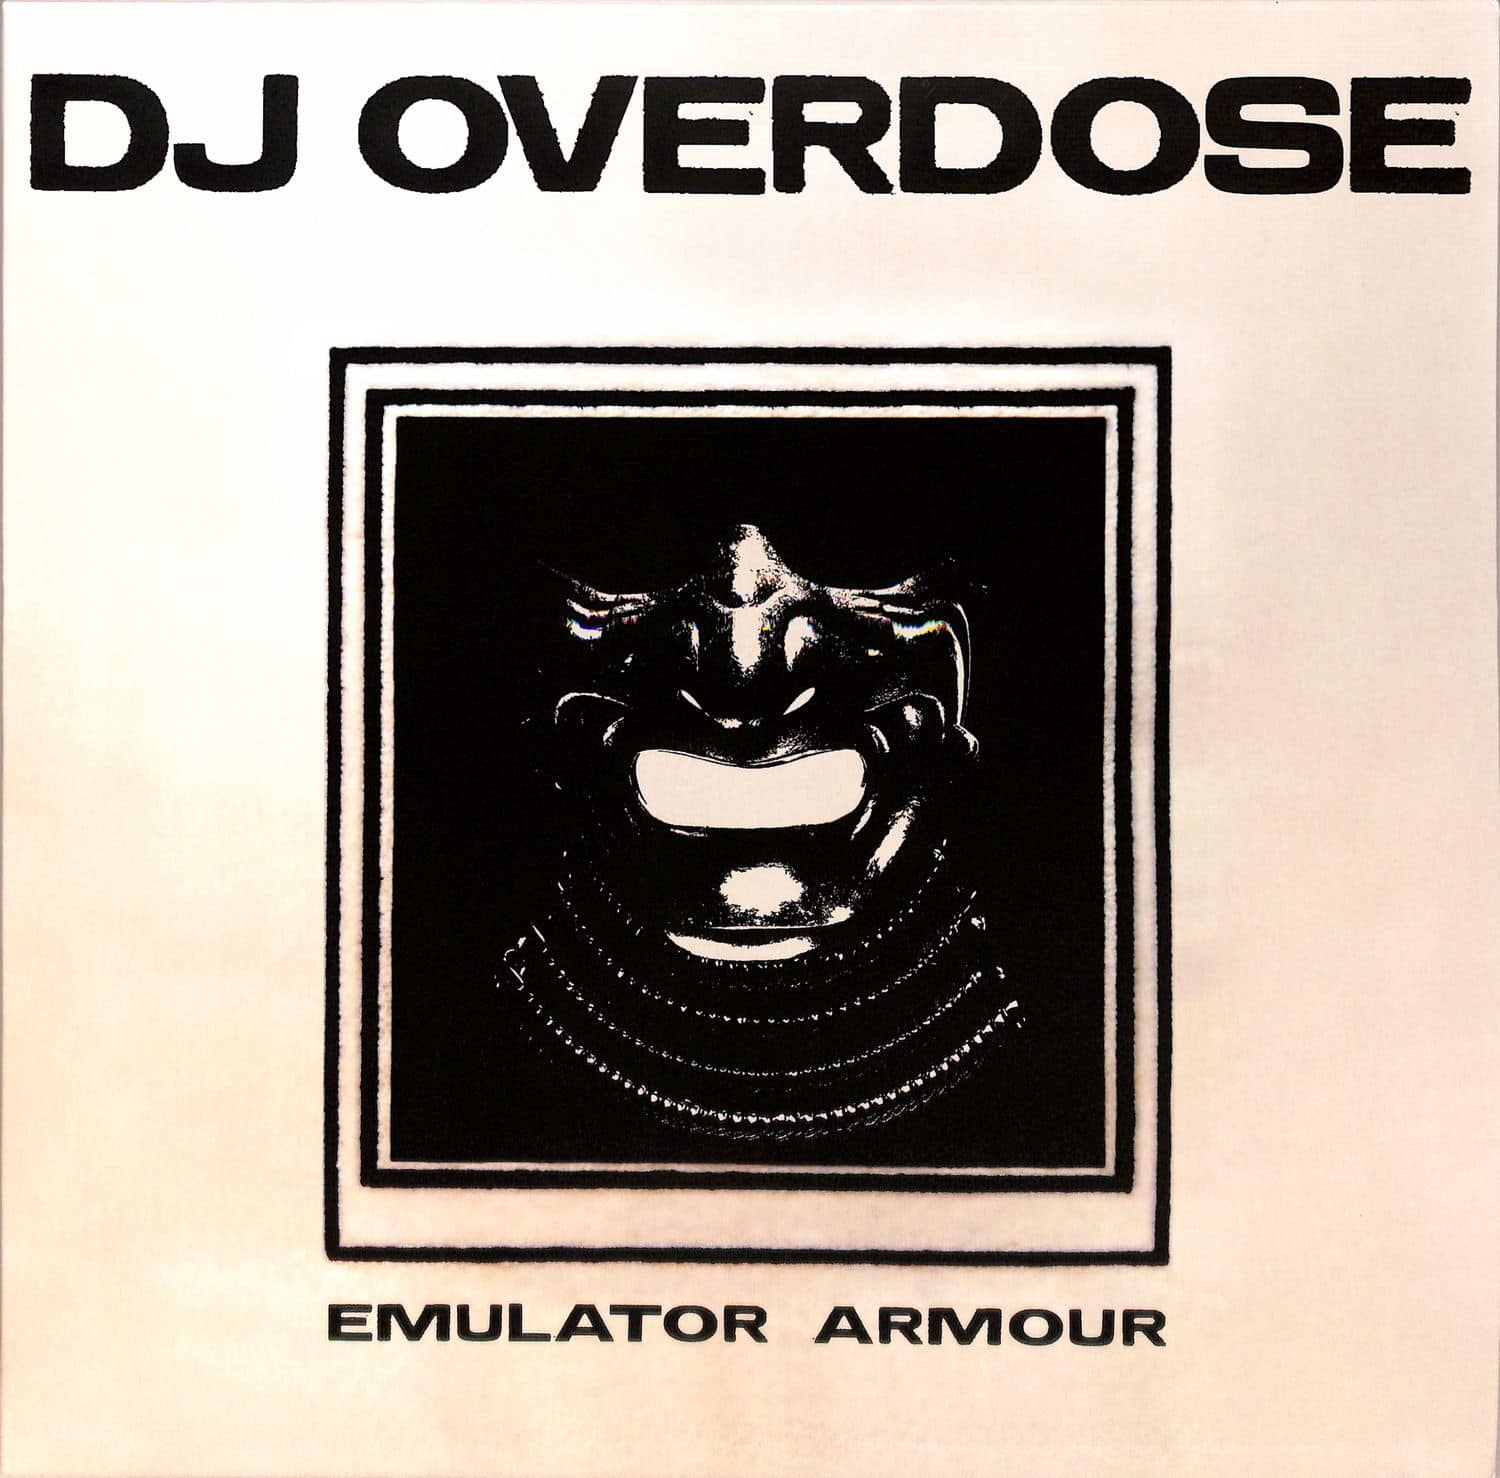 DJ Overdose - EMULATOR ARMOUR 